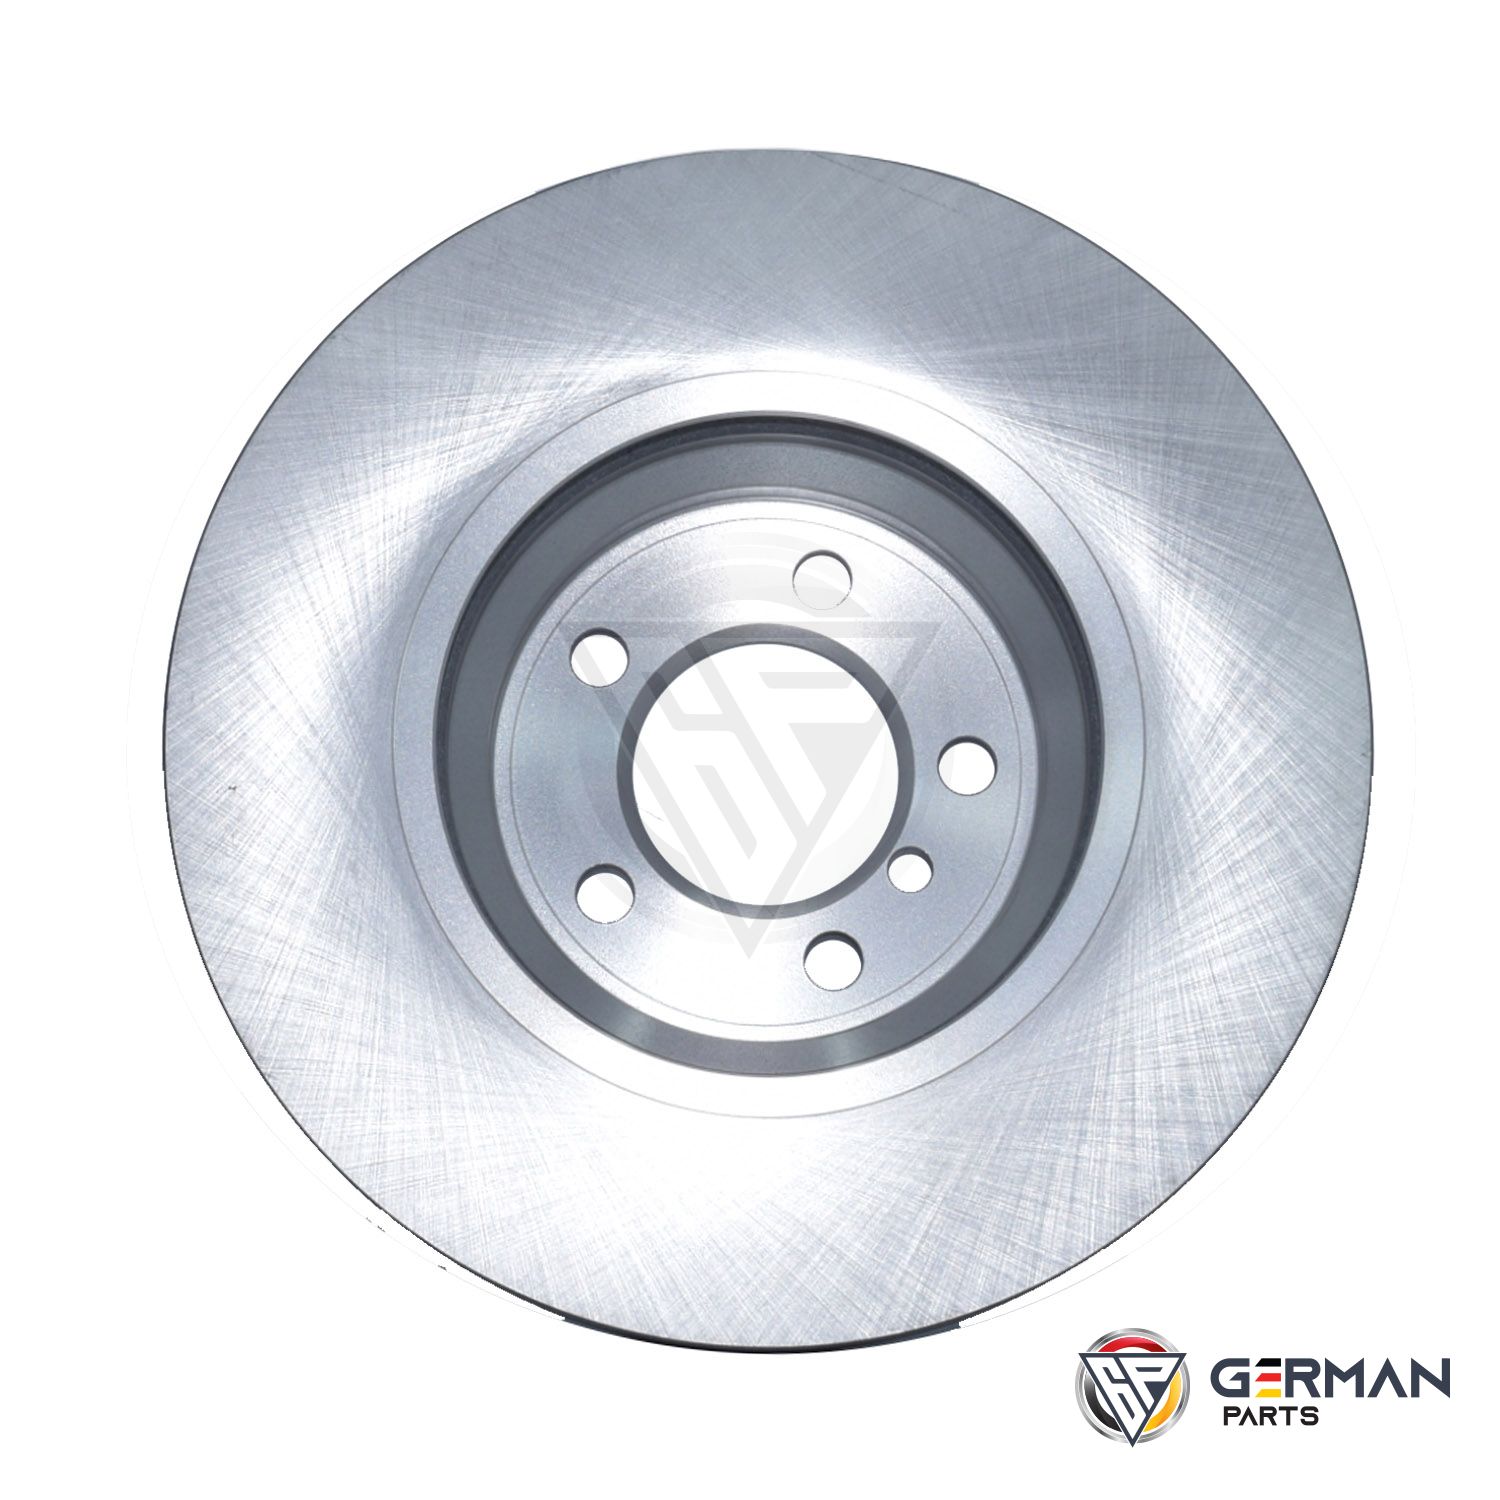 Buy TRW Front Brake Disc 34116750267 - German Parts